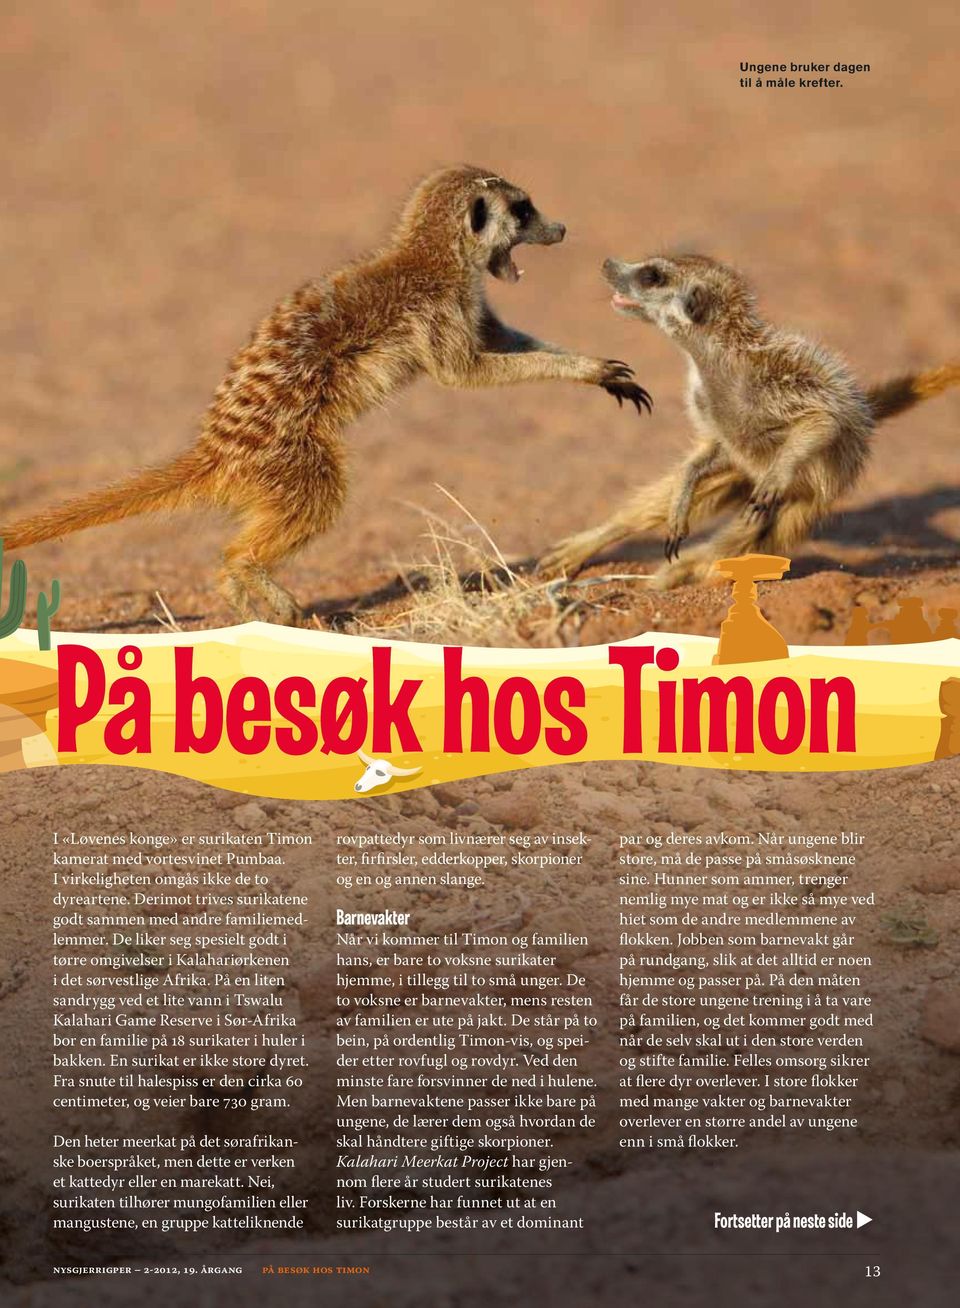 På n litn sandrygg vd t lit vann i Tswalu Kalahari Gam Rsrv i Sør-Afrika bor n famili på 18 surikatr i hulr i bakkn. En surikat r ikk stor dyrt.